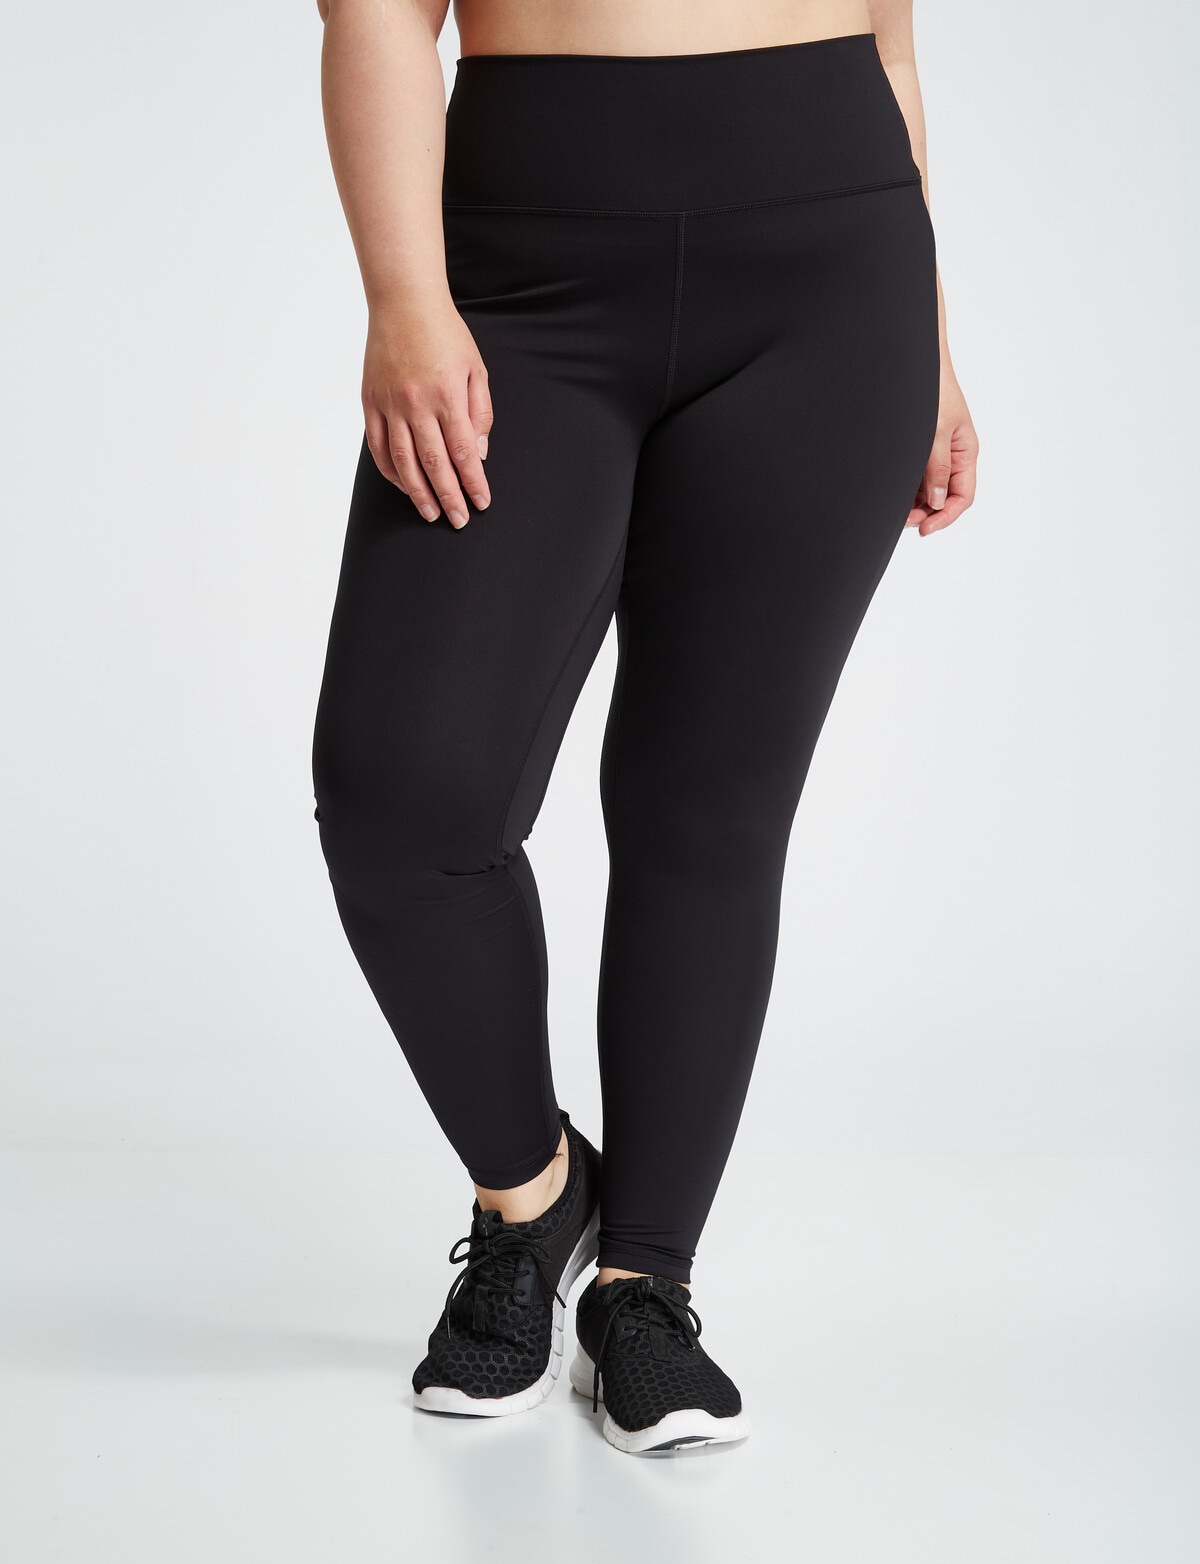 Superfit Curve Active Full-Length Legging, Black - Jeans, Pants